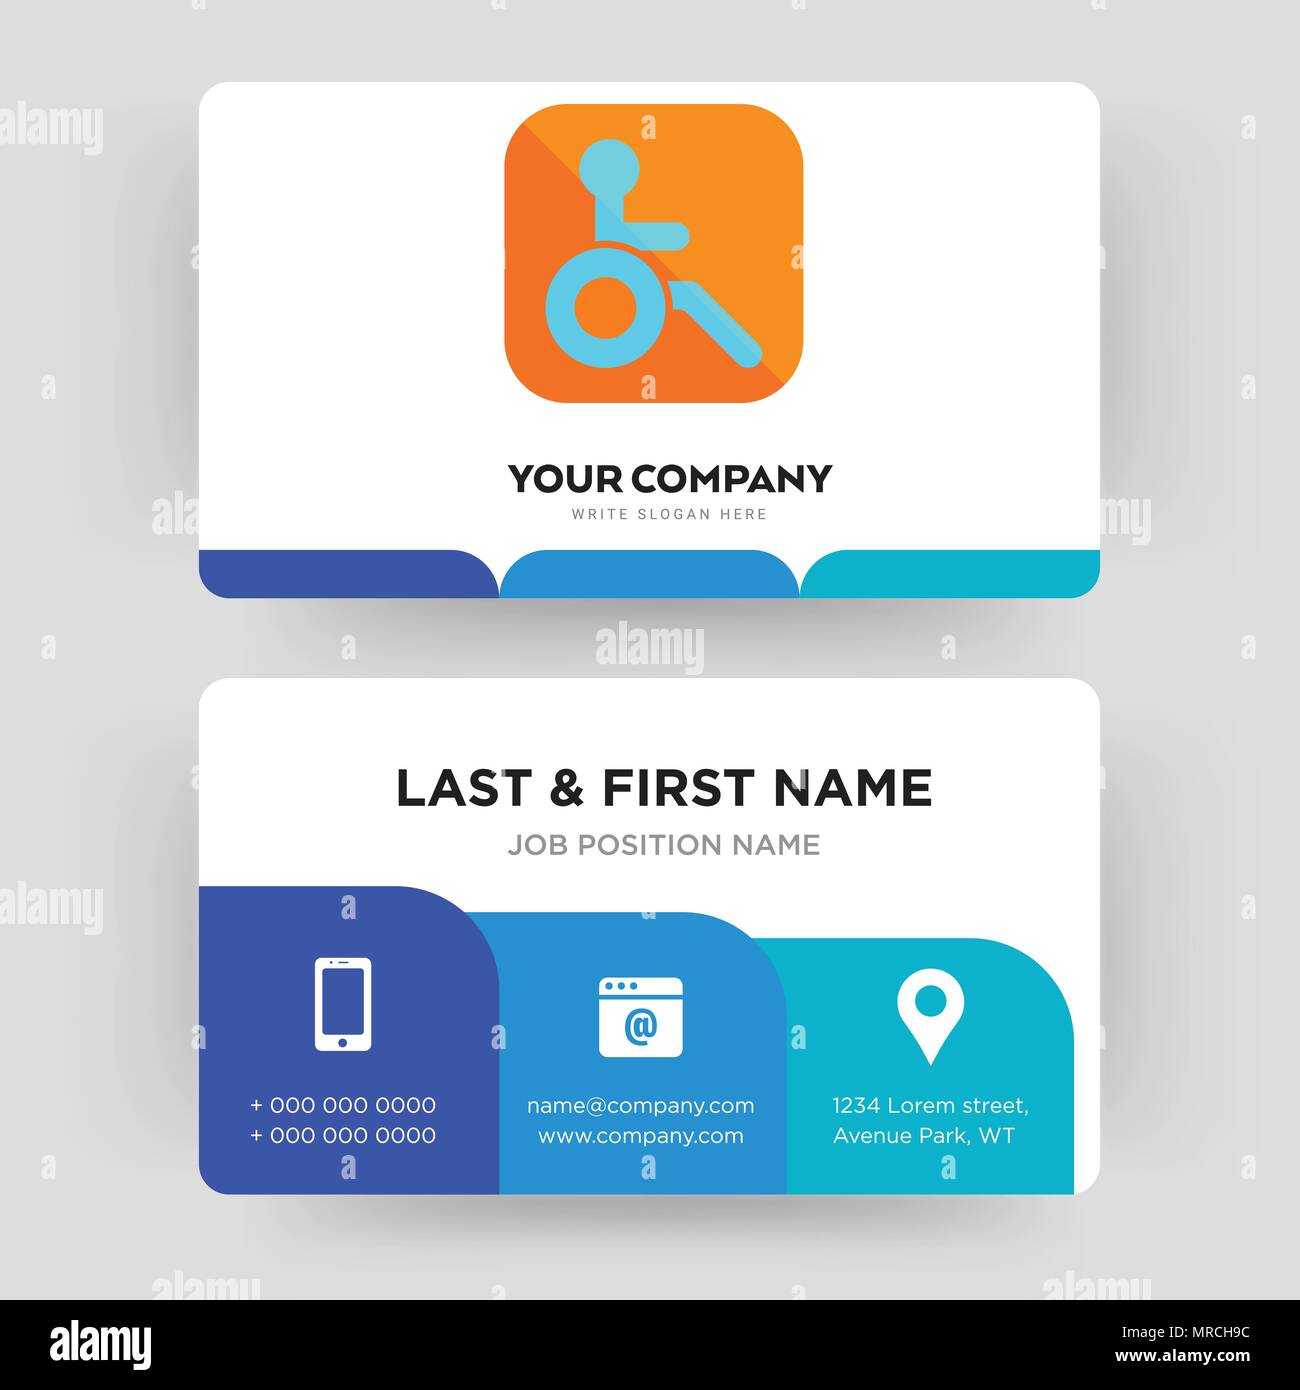 disability business card ideas